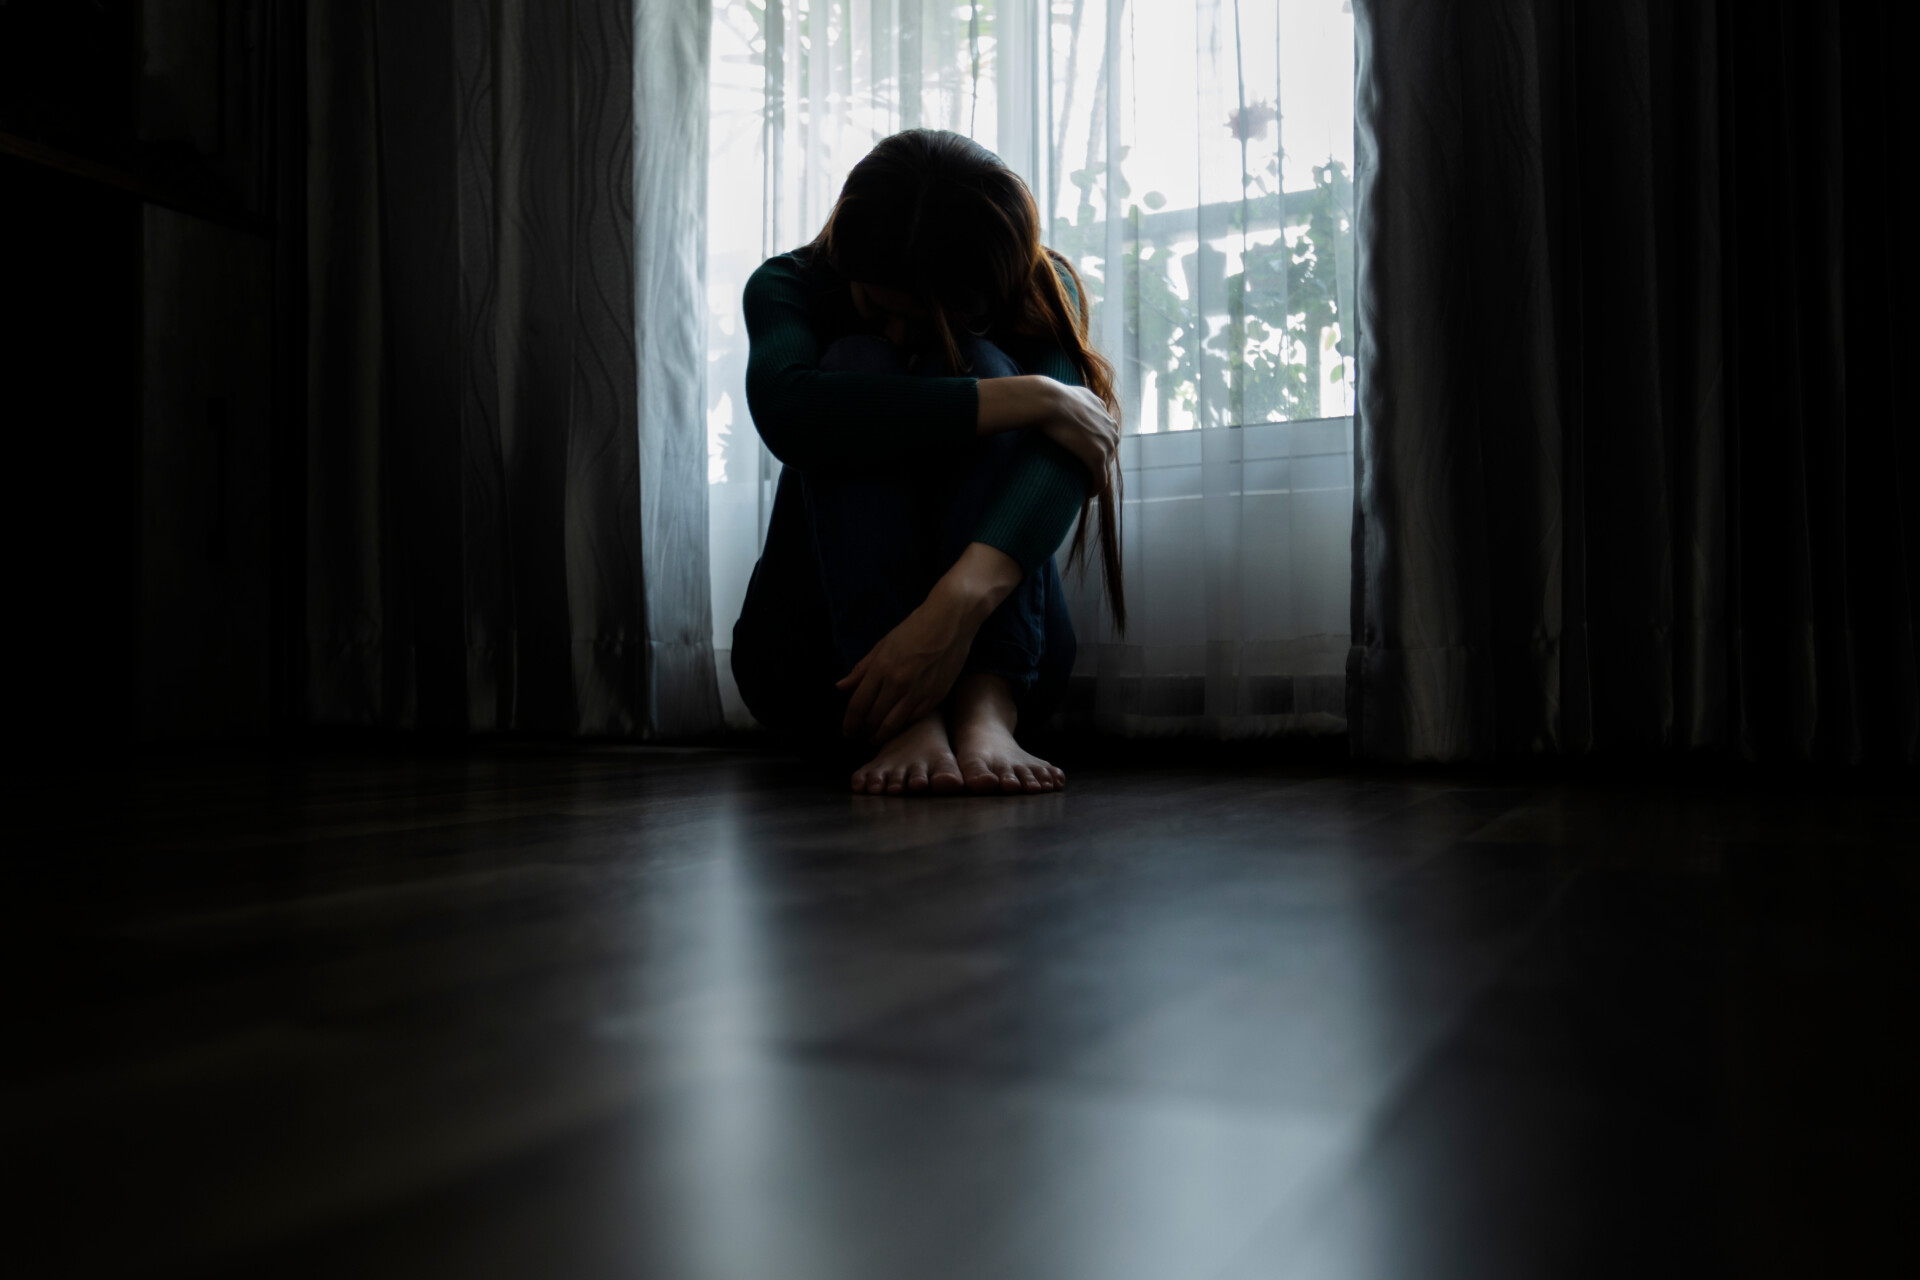 Γαλλία: Προώθηση της πορνείας και βιασμοί από διεθνή αίρεση γιόγκας